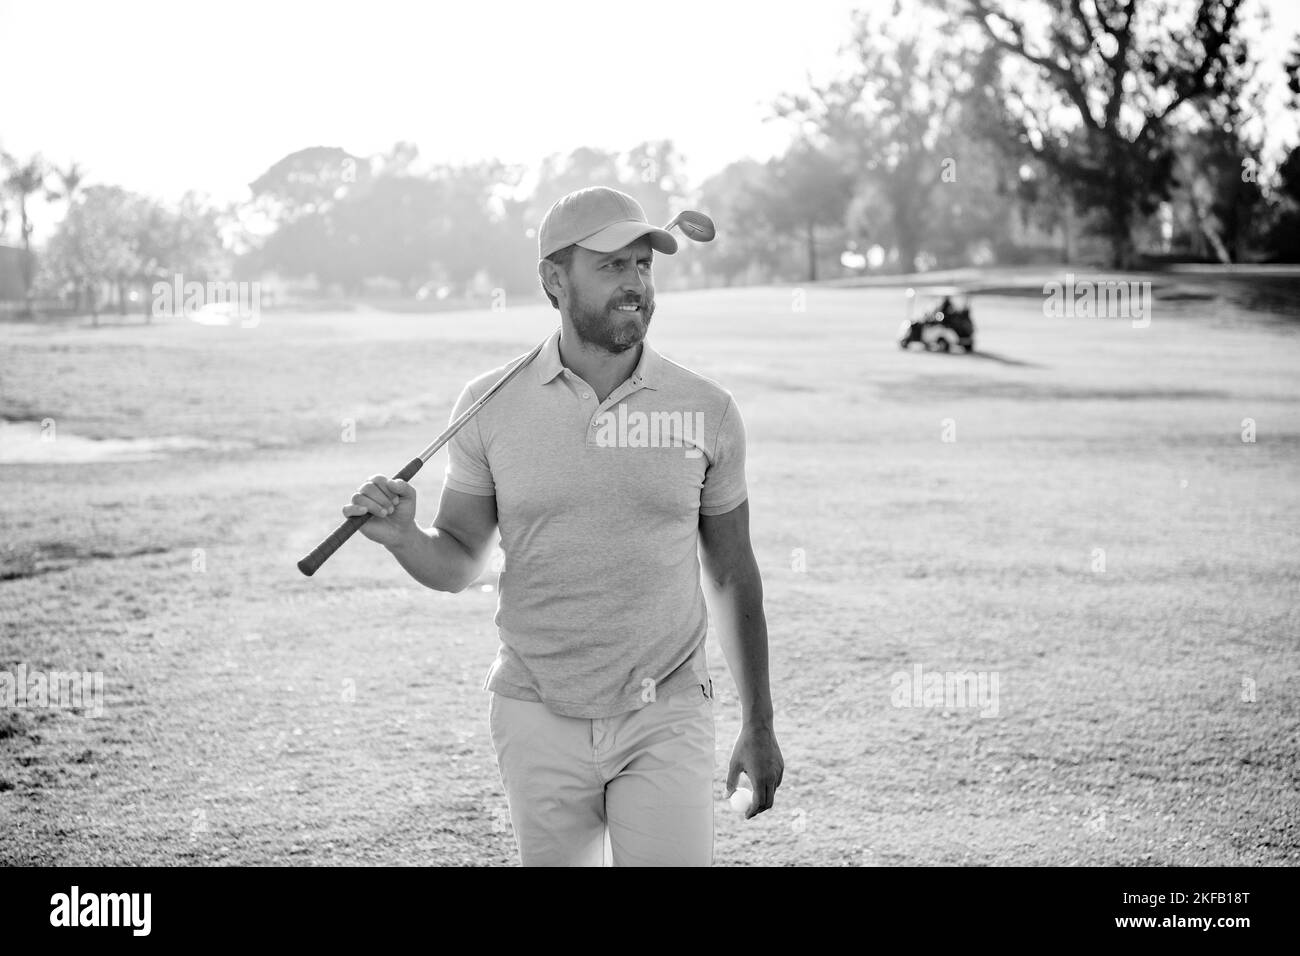 activité estivale. sport professionnel en plein air. joueur de golf pour hommes sur un parcours de golf professionnel. Banque D'Images